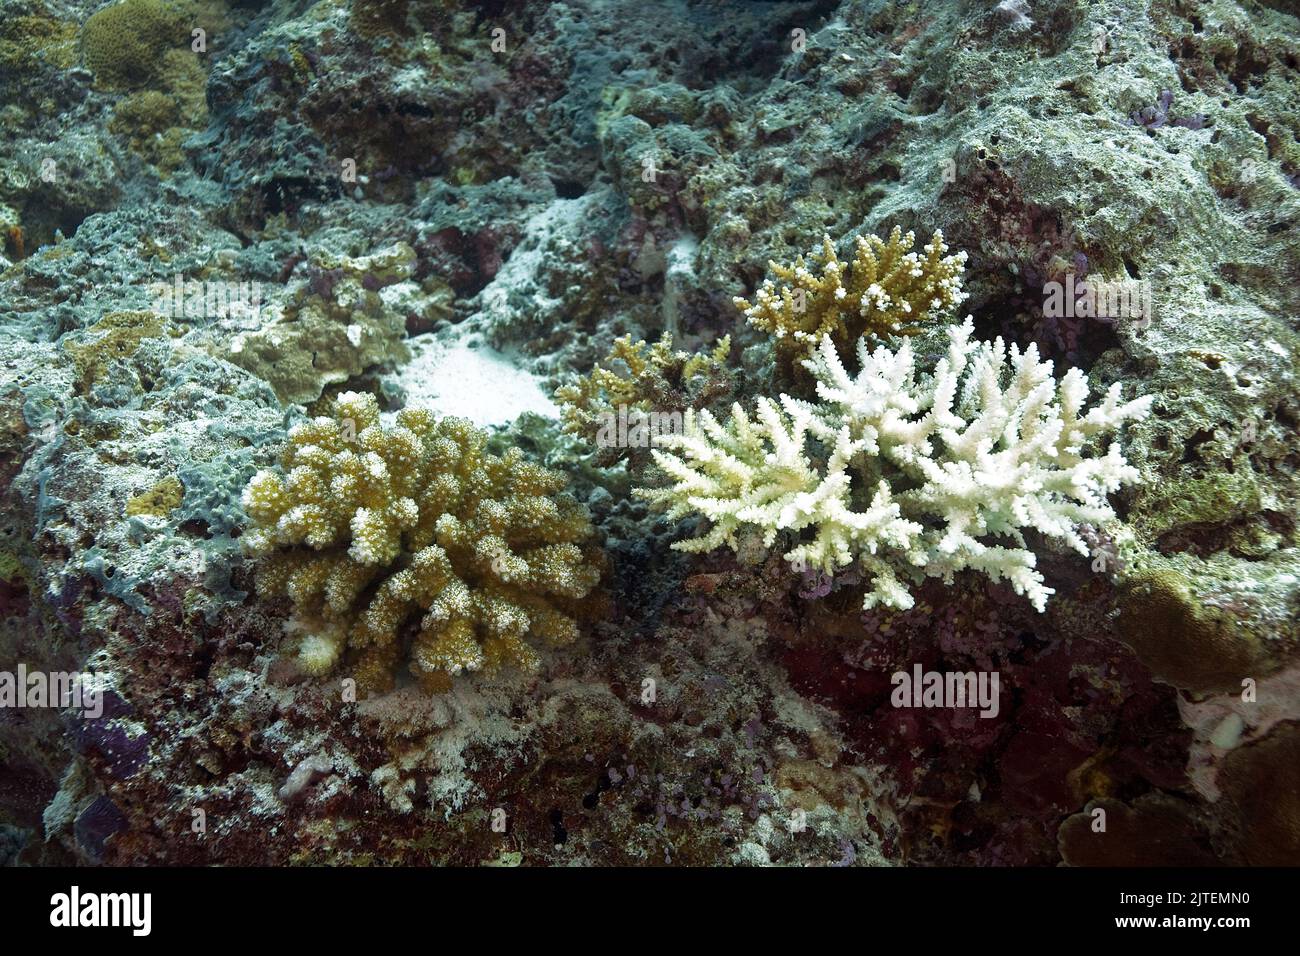 El blanqueamiento de corales, el cambio climático debido al calentamiento global degrada la salud de los arrecifes de coral, Maldivas, Océano Índico Foto de stock